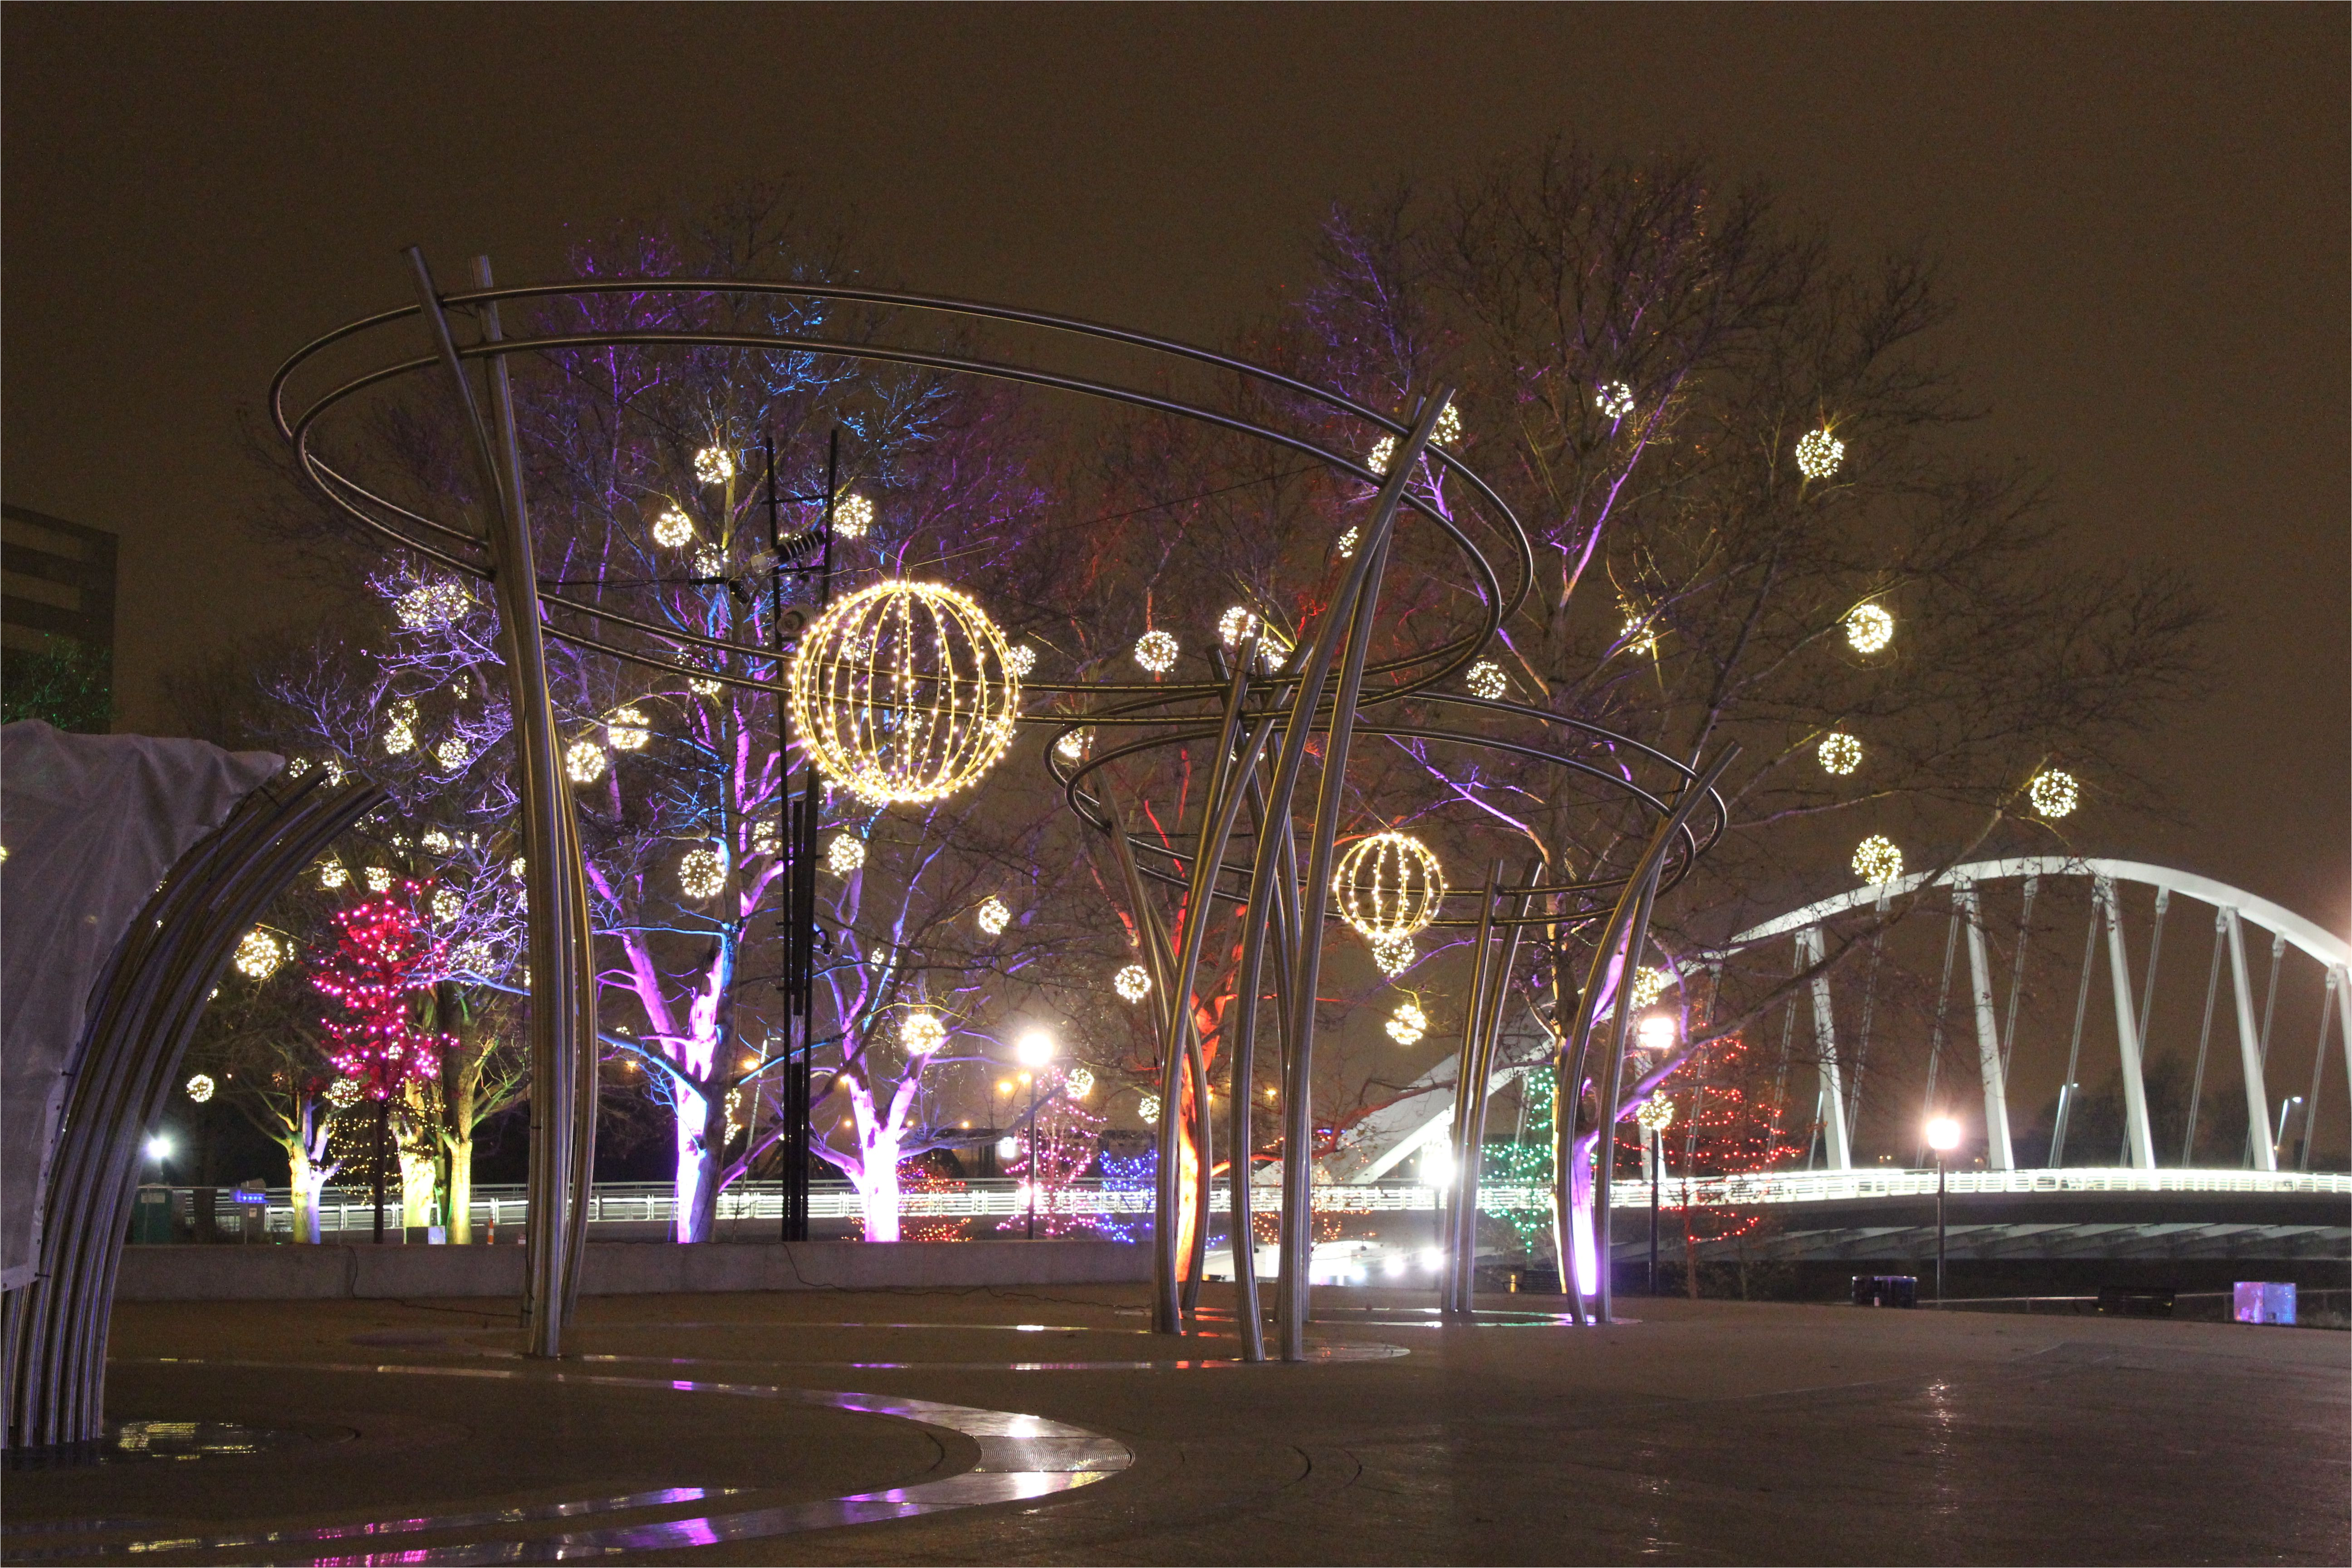 bicentennial park columbus ohio winter lights 2014 5a105d36b39d030037e54e3f jpg